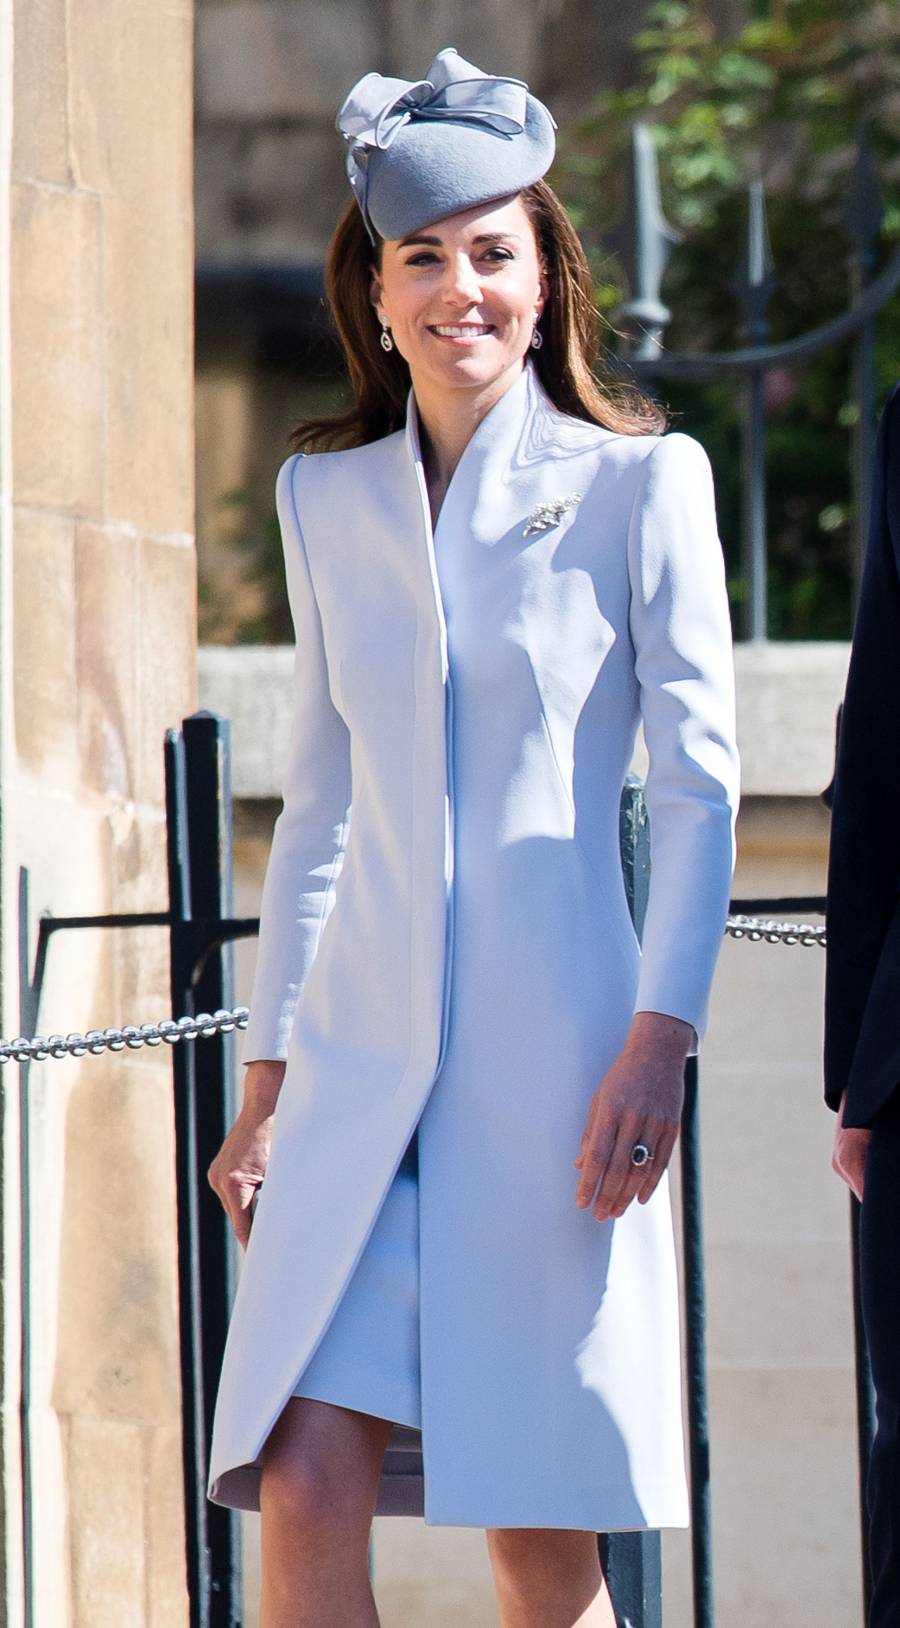 Kate Middleton Royal Family Celebrate Easter